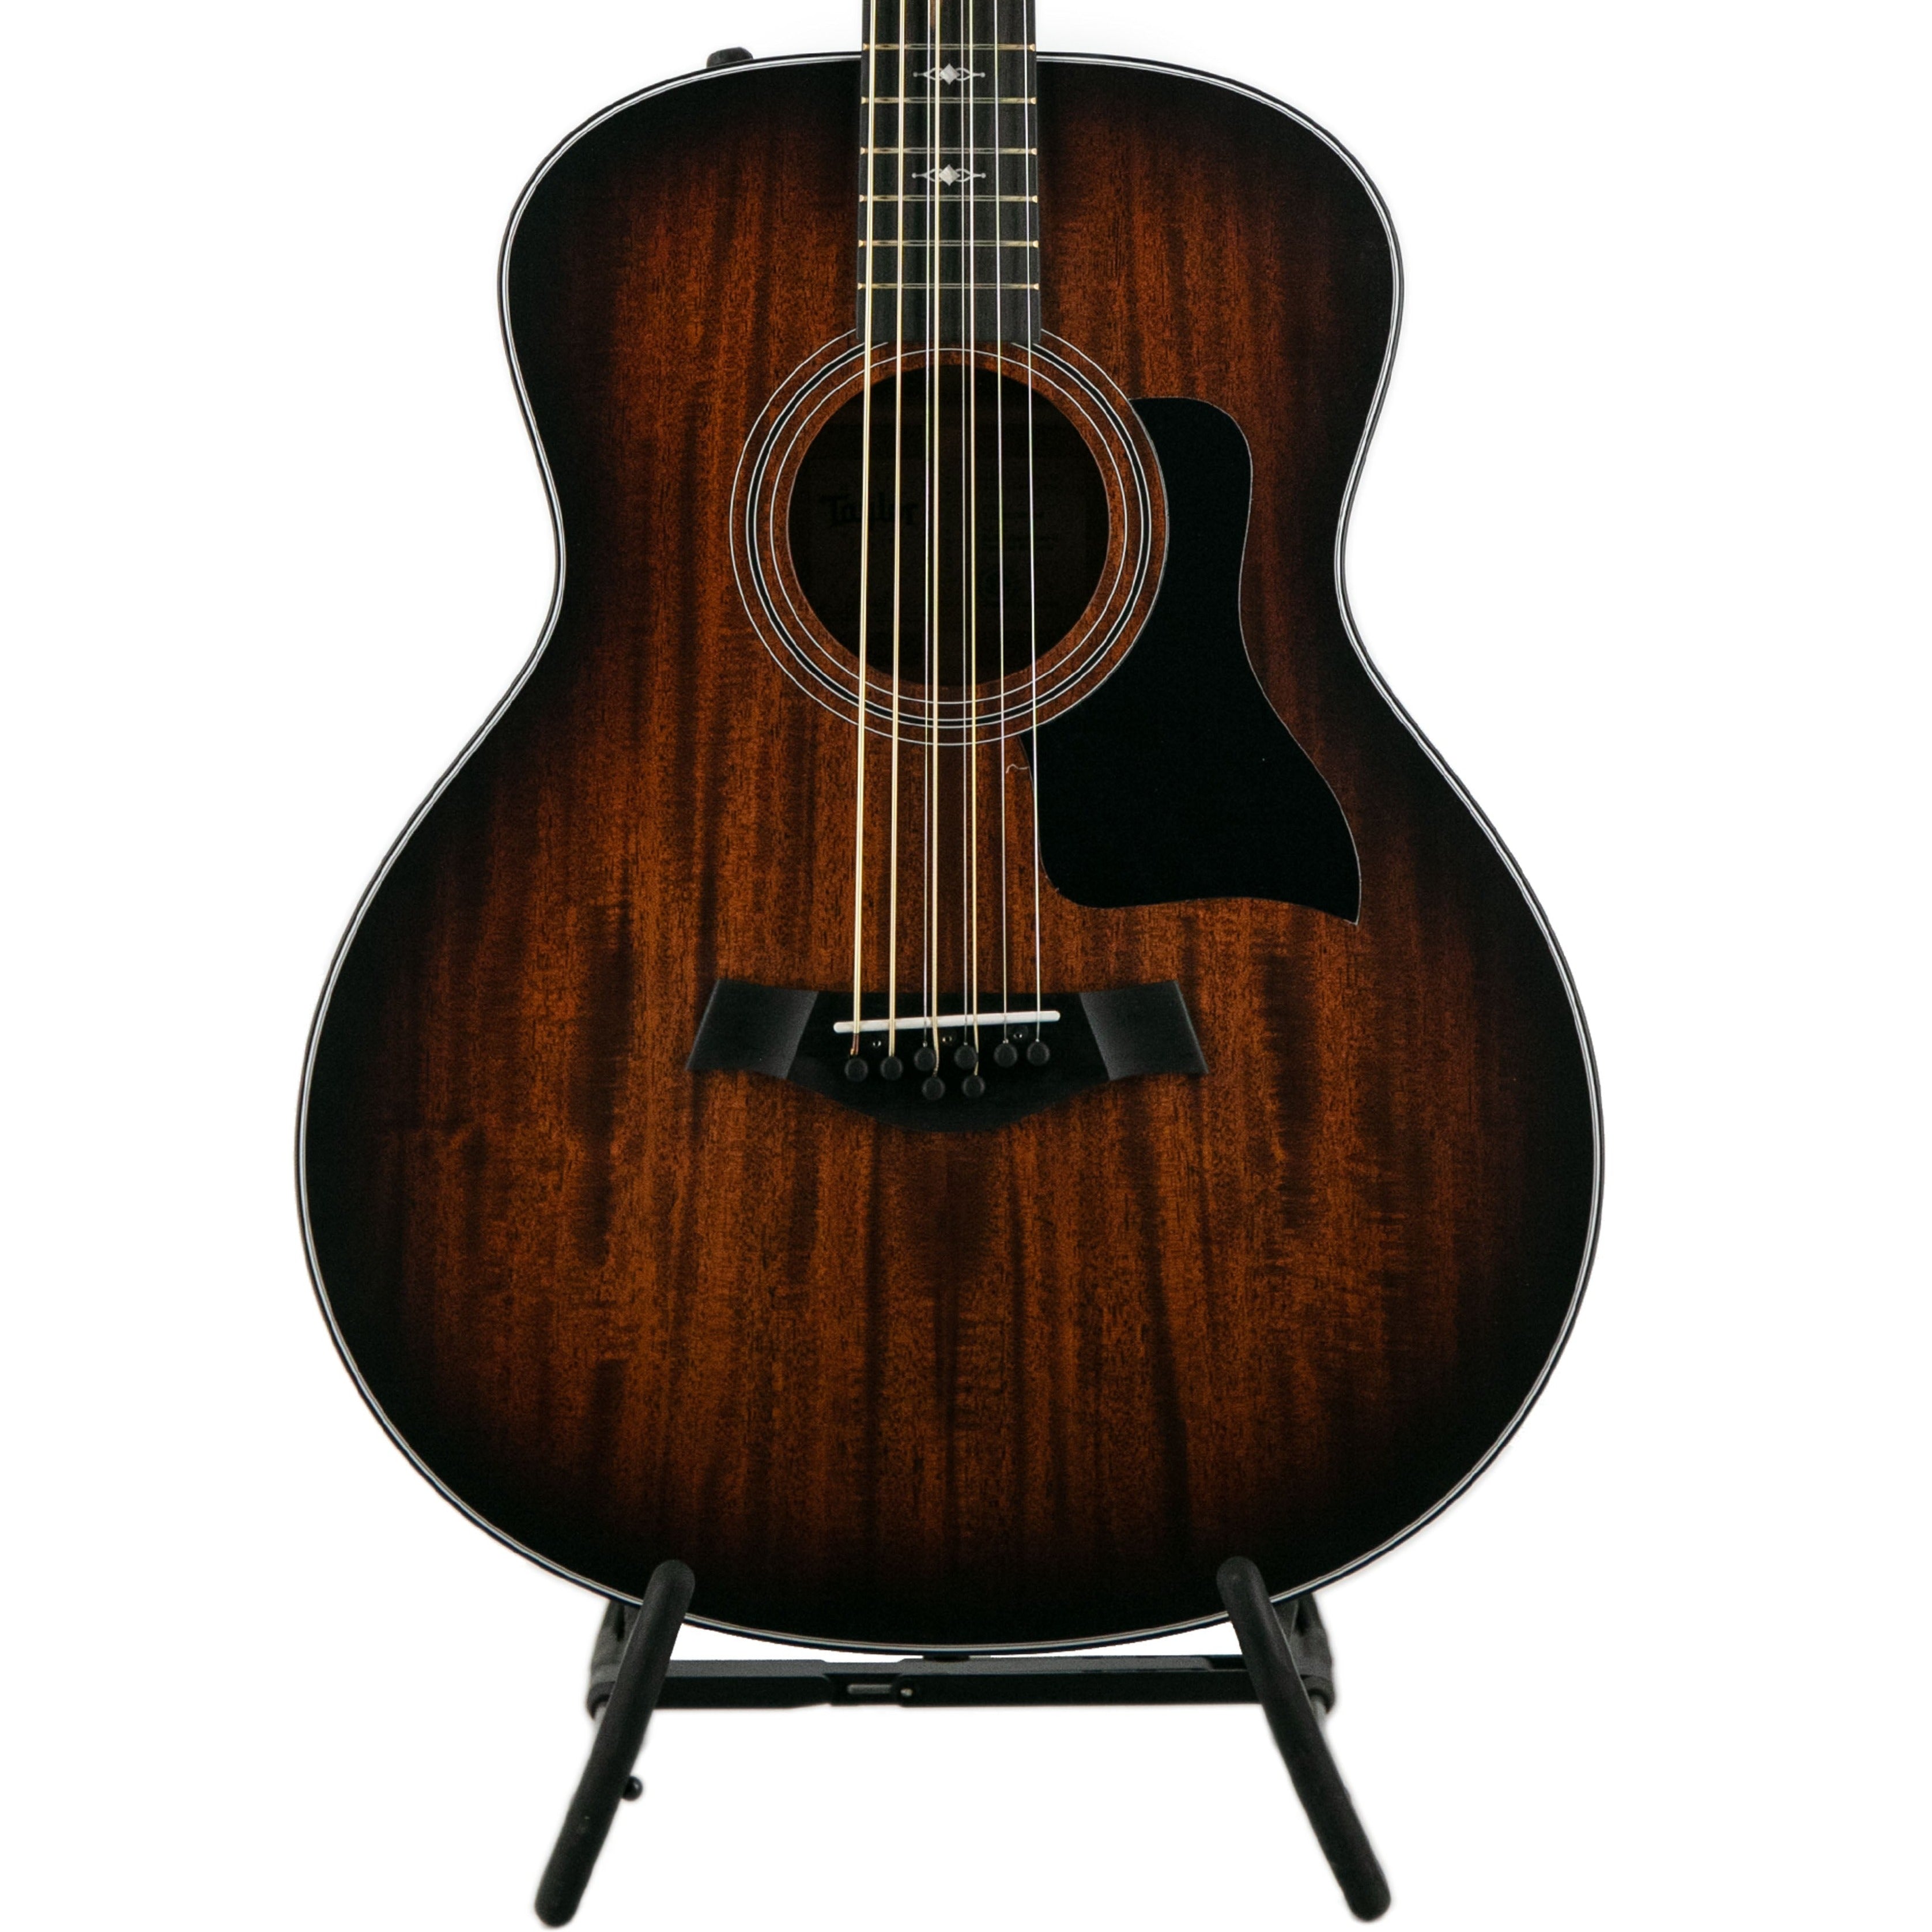 Taylor 326E Baritone-8 Limited Edition Acoustic Guitar w/ Mahogany Top & Bag | Zoso Music Sdn Bhd